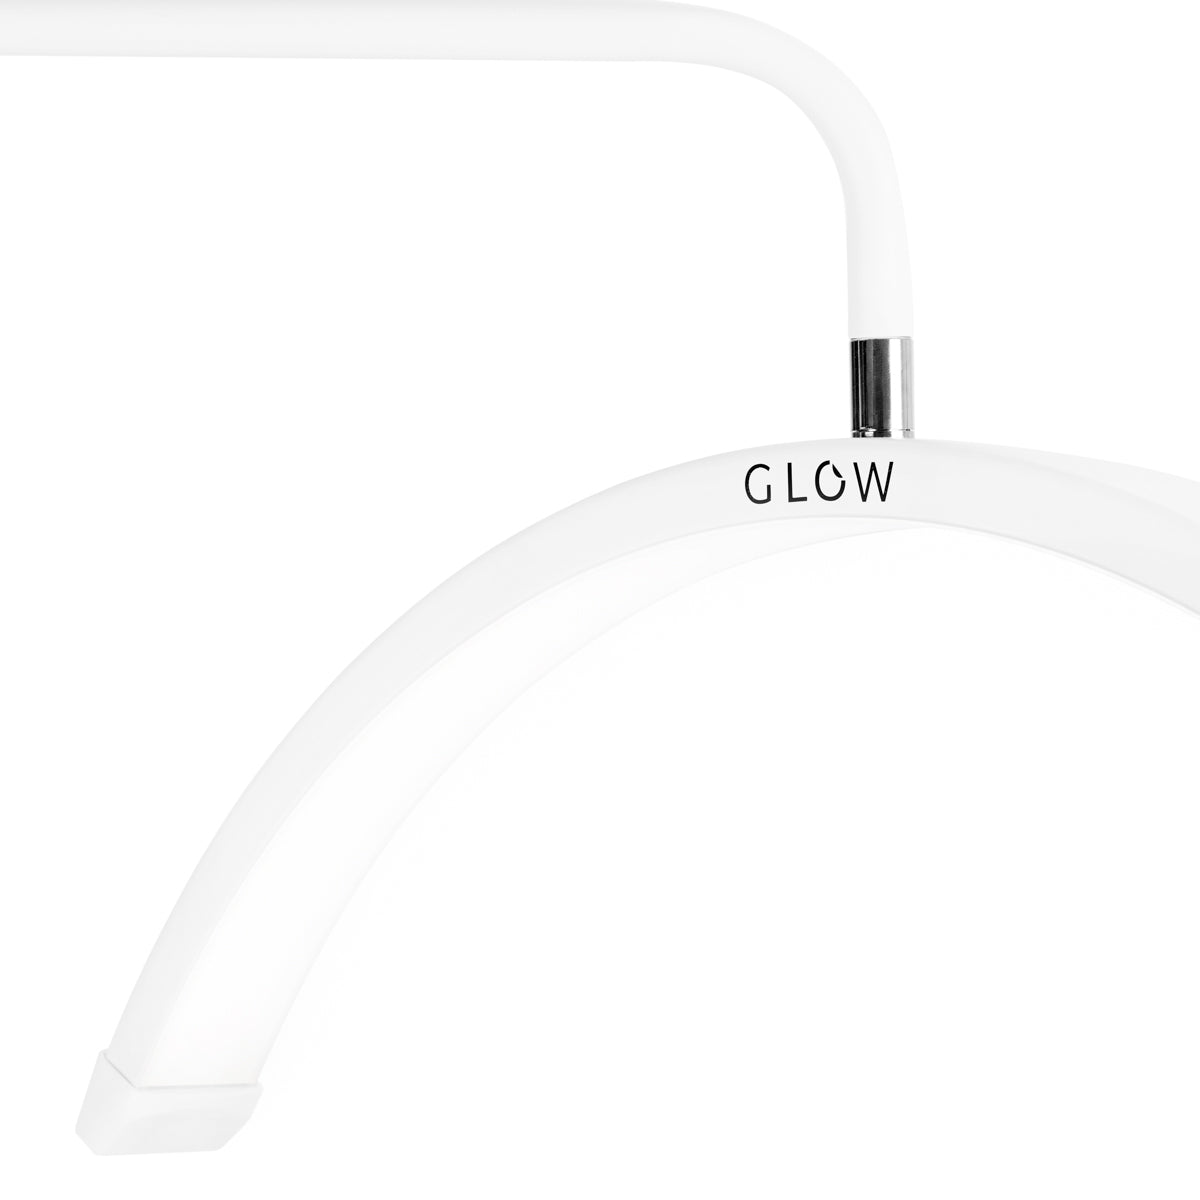 Lampe de traitement des cils Glow MX6 blanche